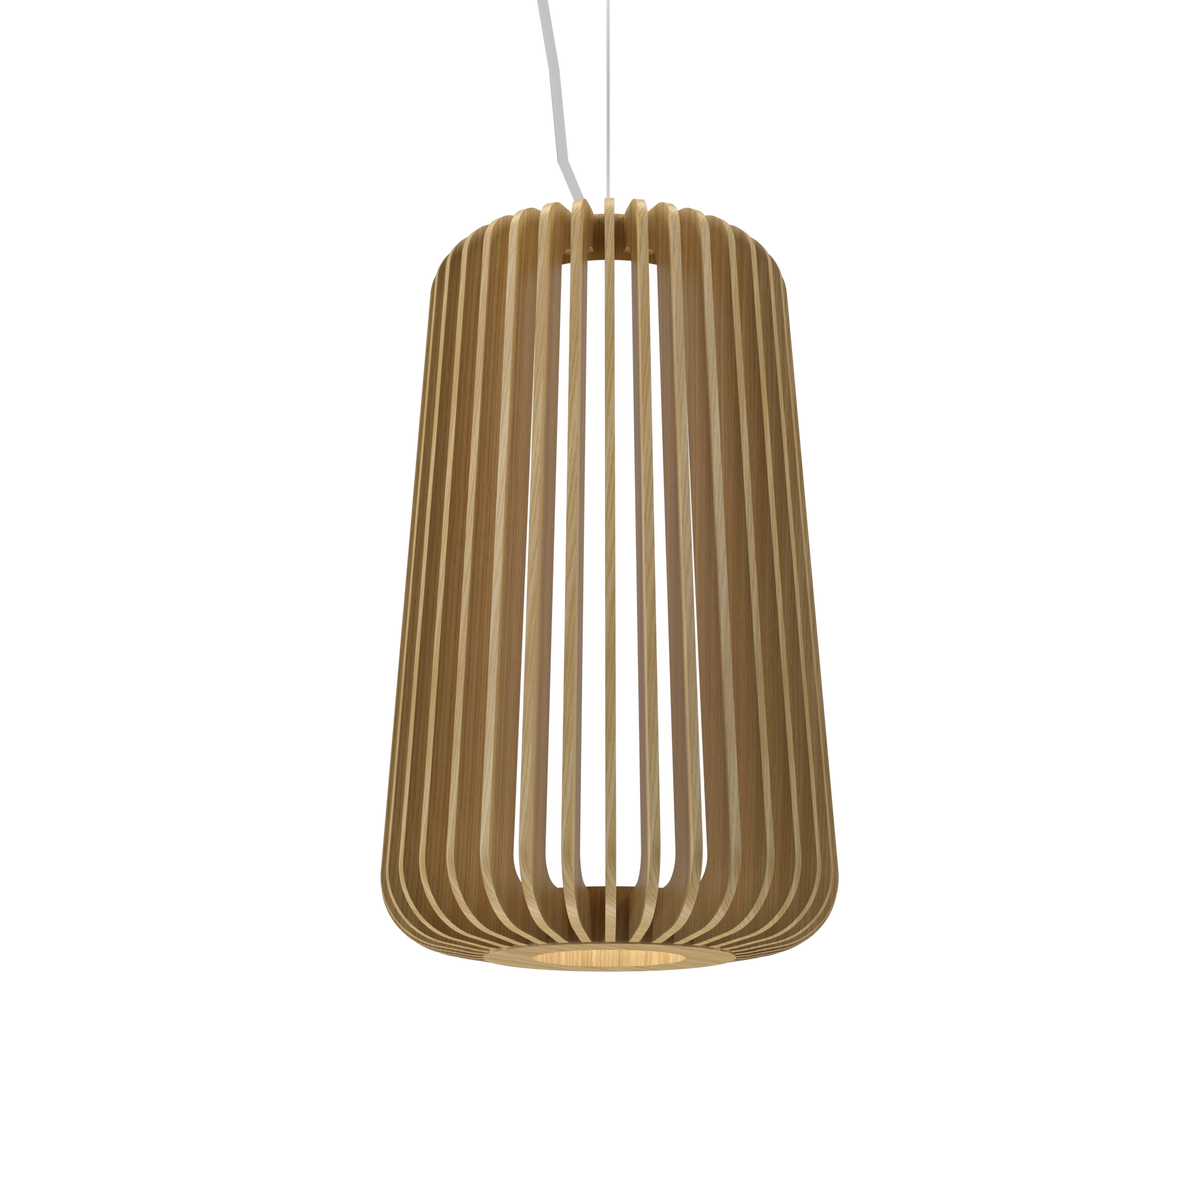 Accord Lighting - 1429.45 - One Light Pendant - Stecche Di Legno - Sand